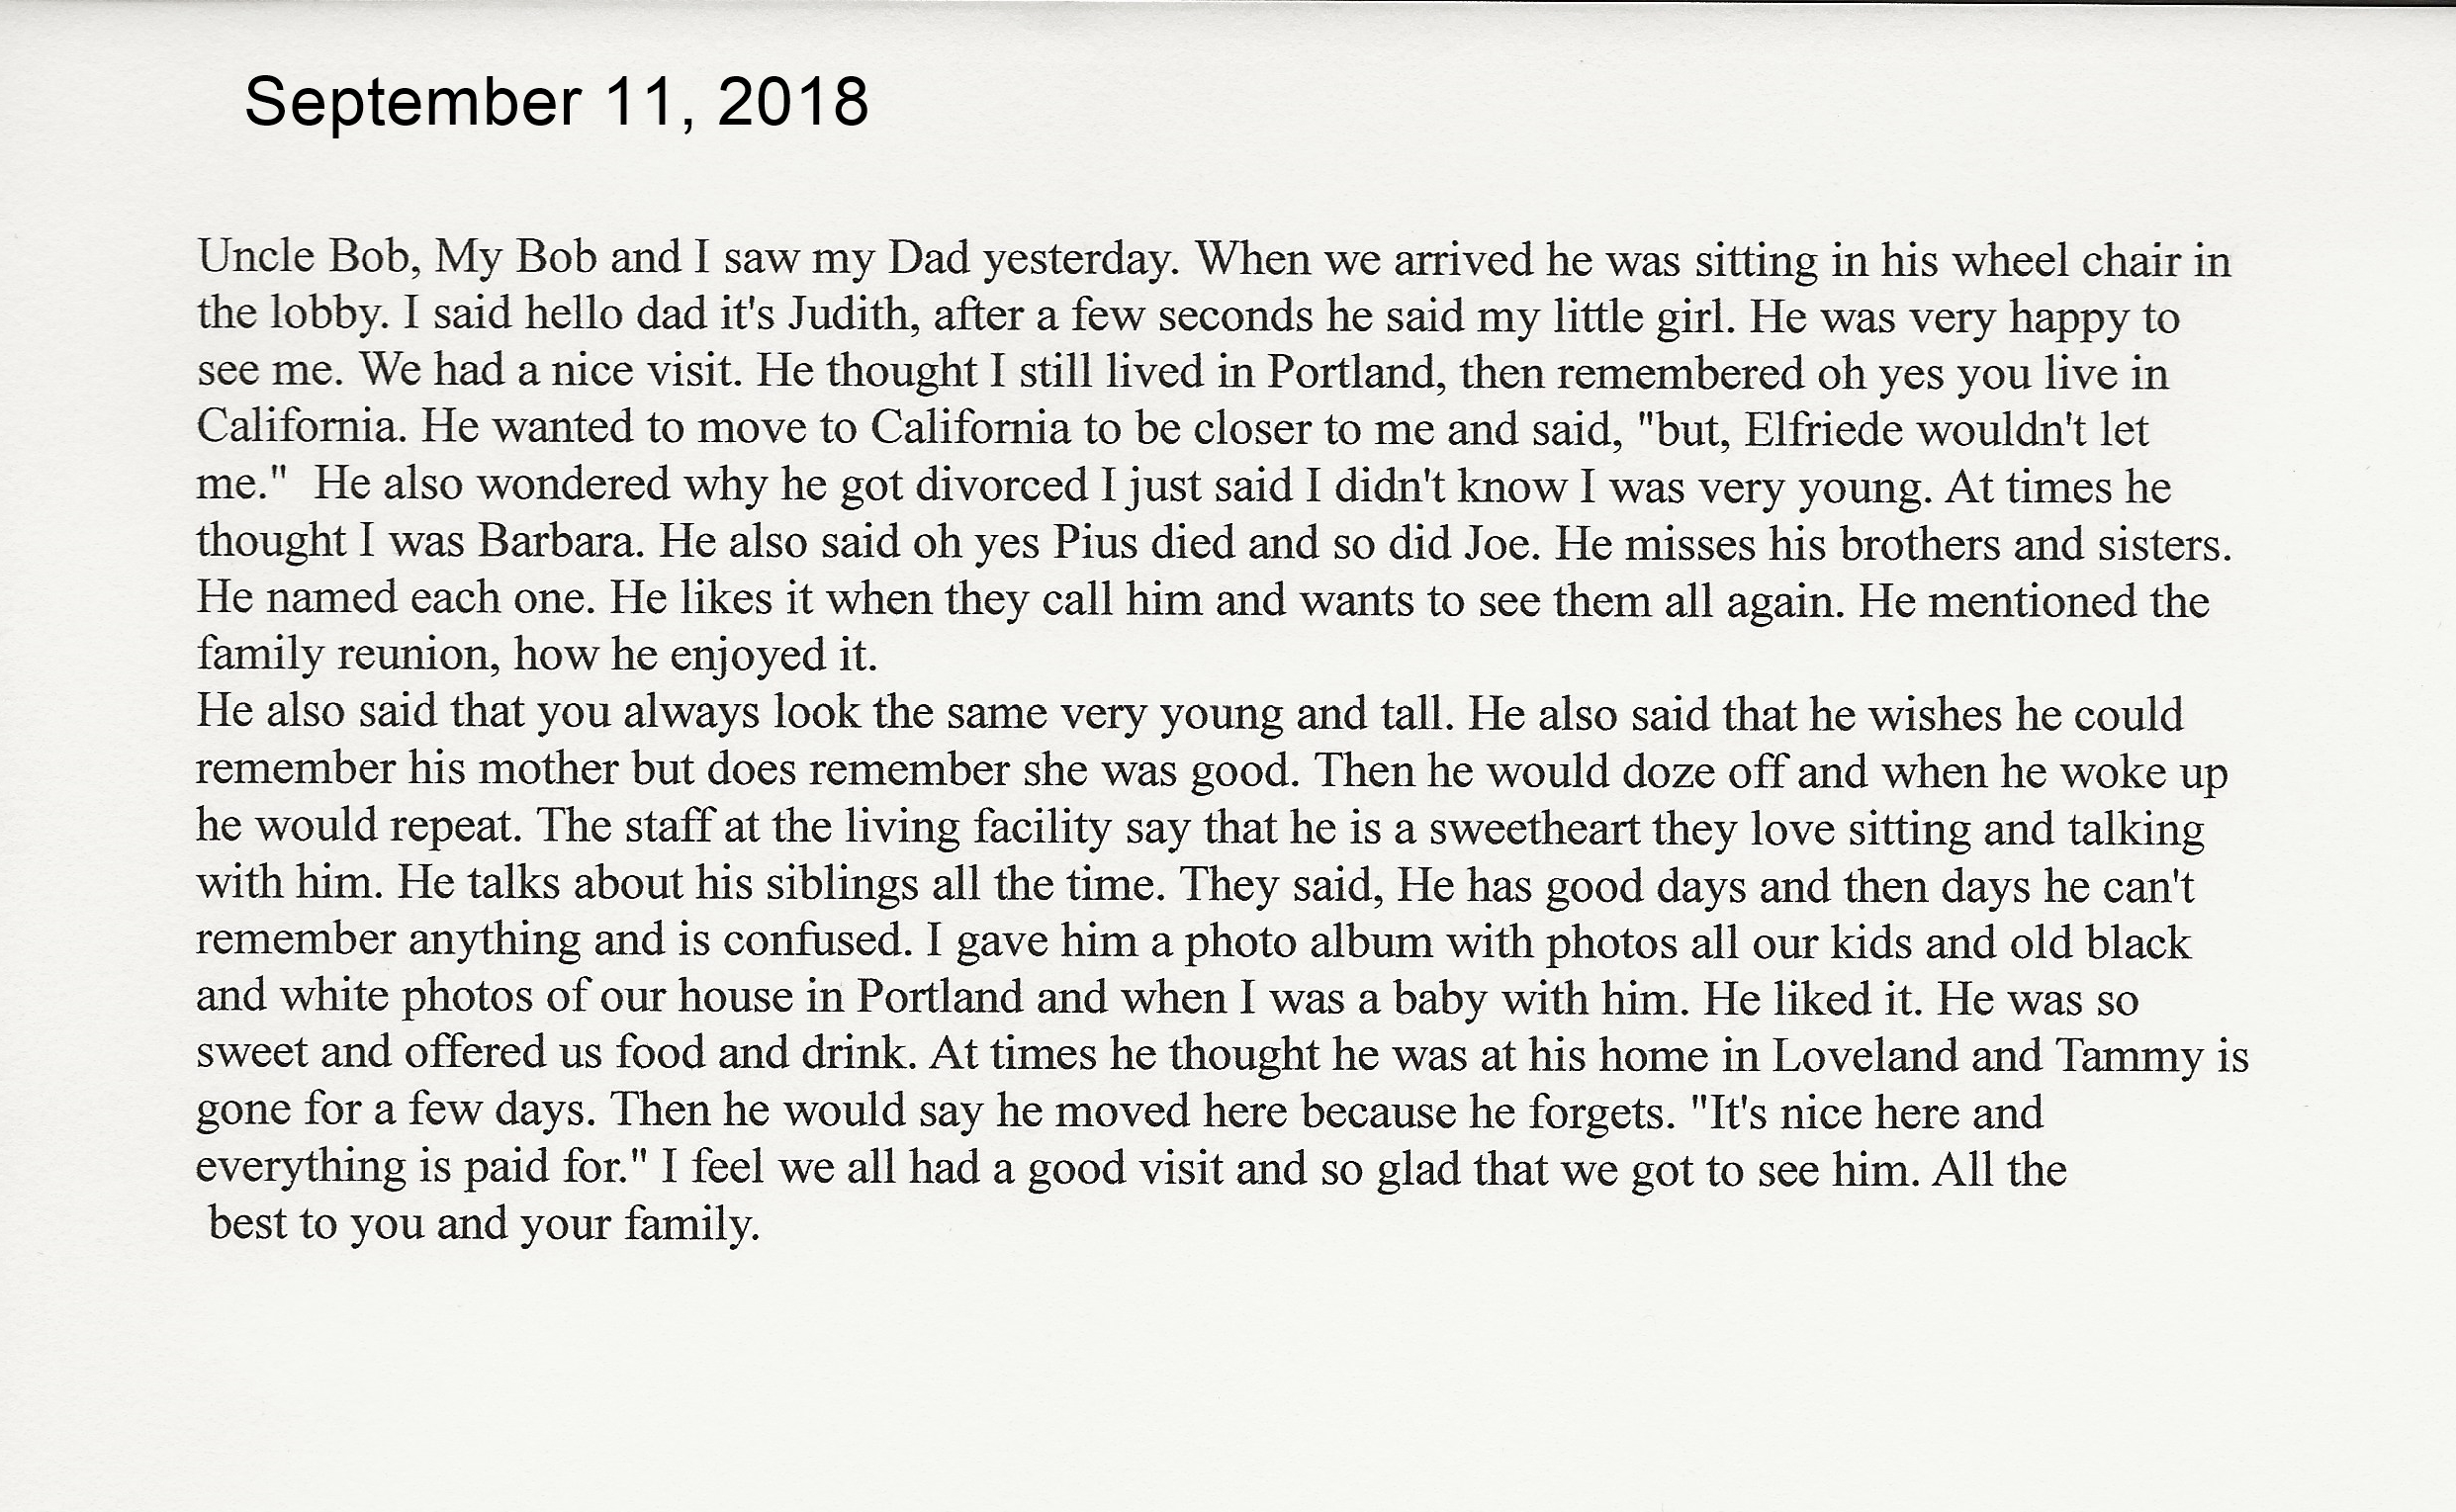 September 11, 2018.  Judith visitng with her Dad